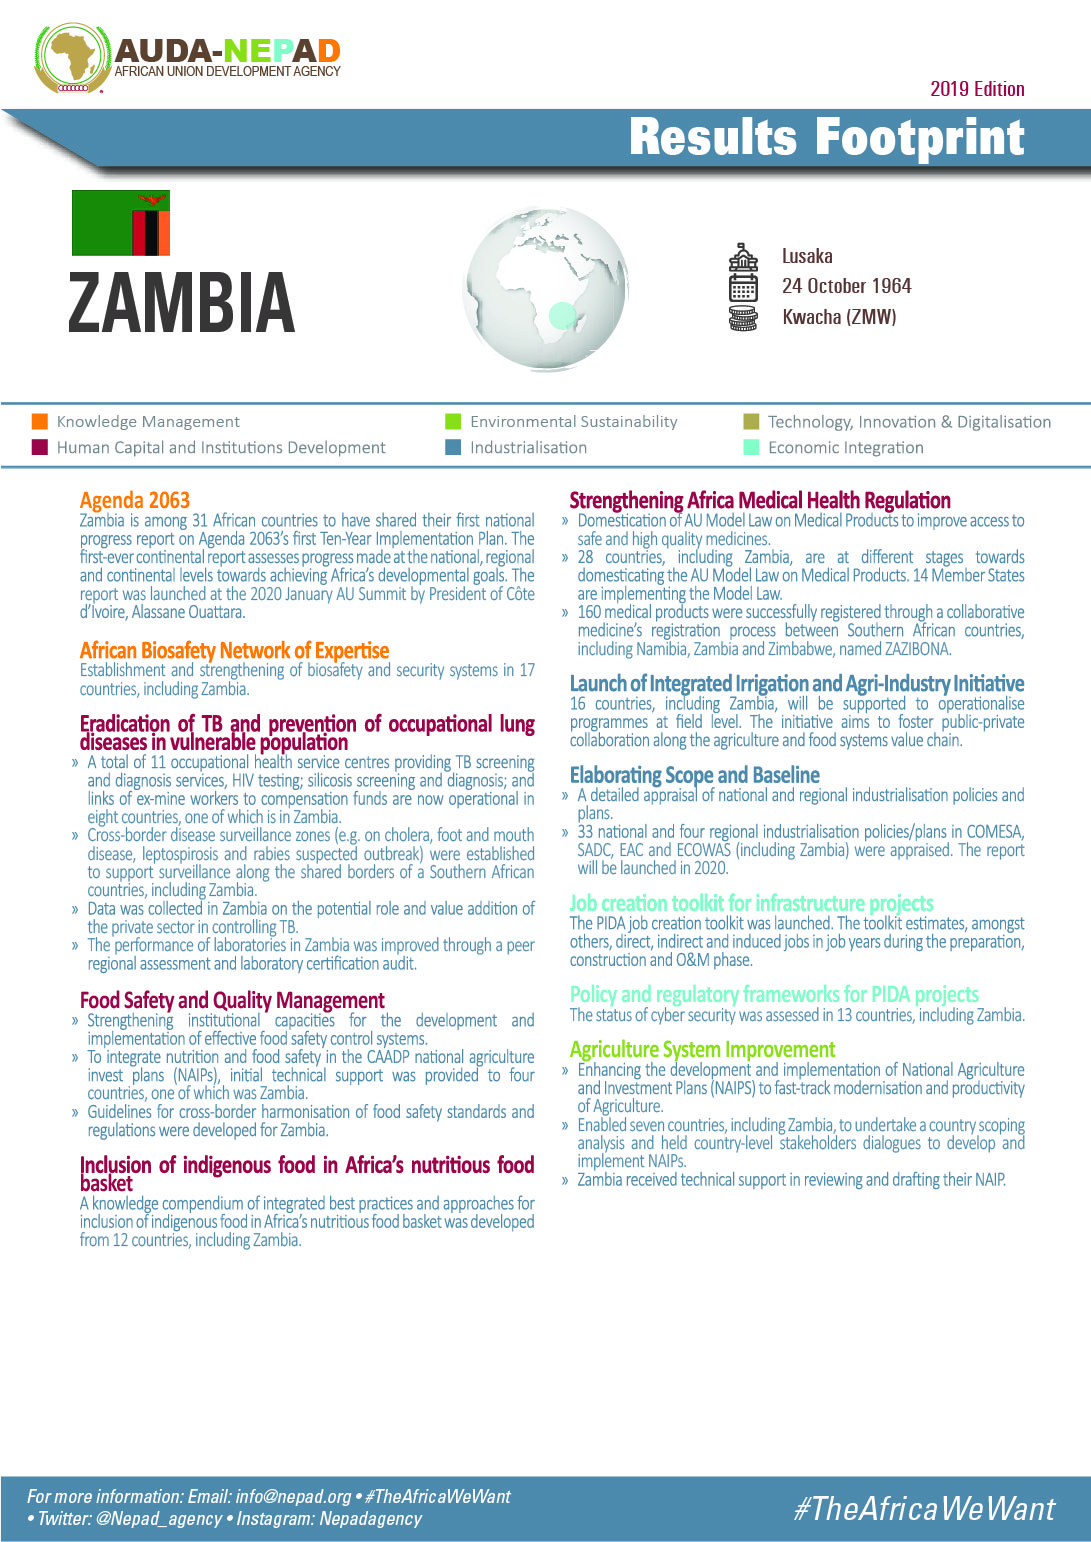 2019 AUDA-NEPAD Footprint: Country Profiles: Zambia